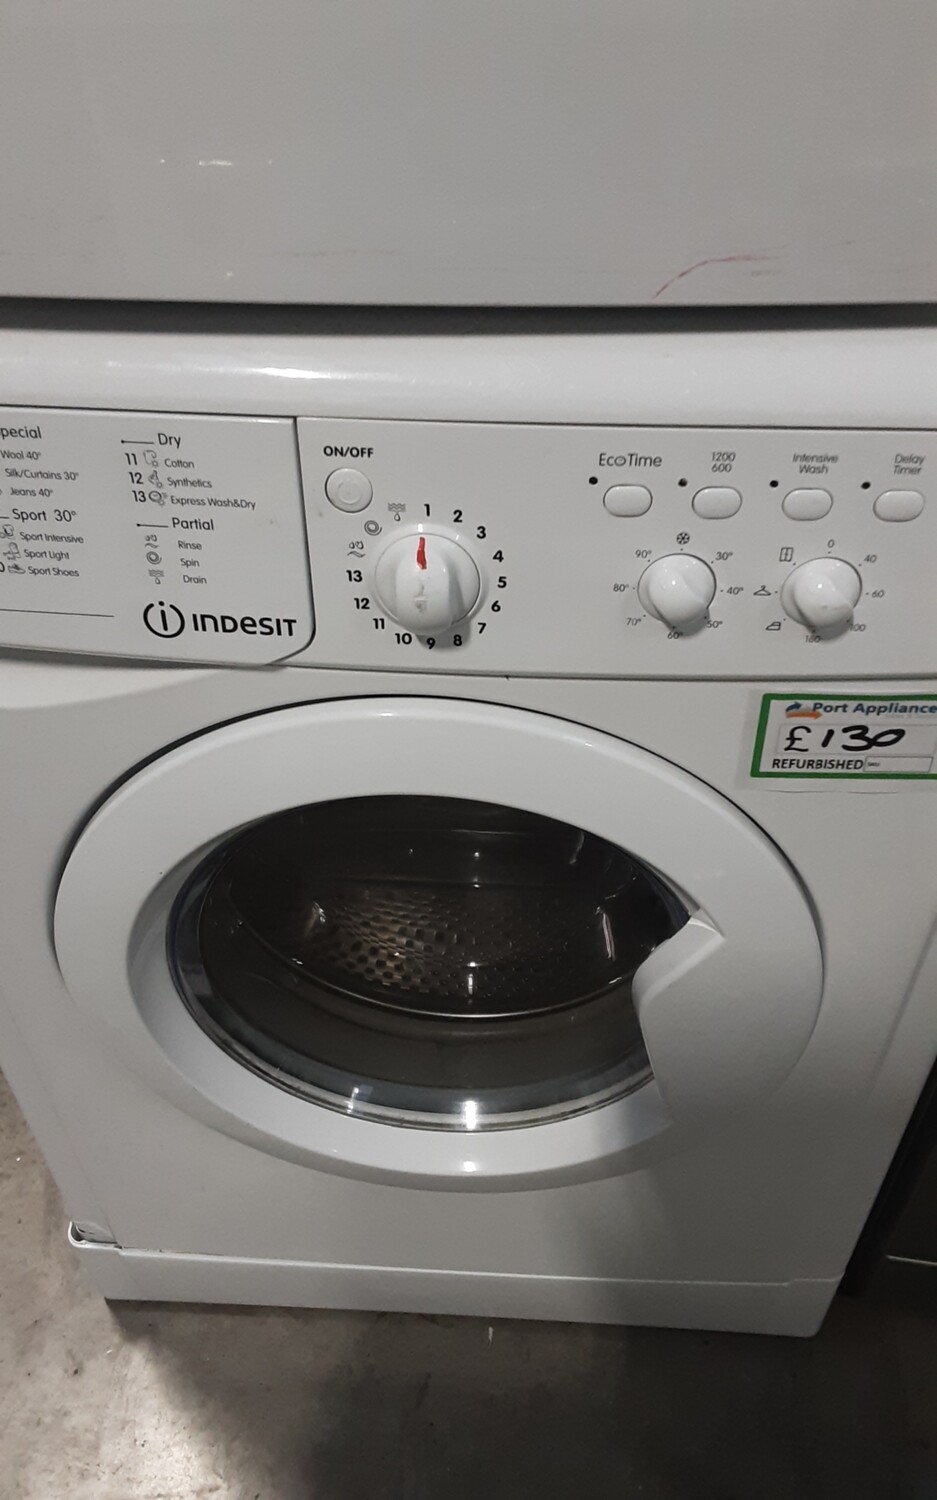 Indesit IWDC6125 6kg Load 1200 Spin Washing Machine Washer Dryer - White - Refurbished - 3 Month Guarantee